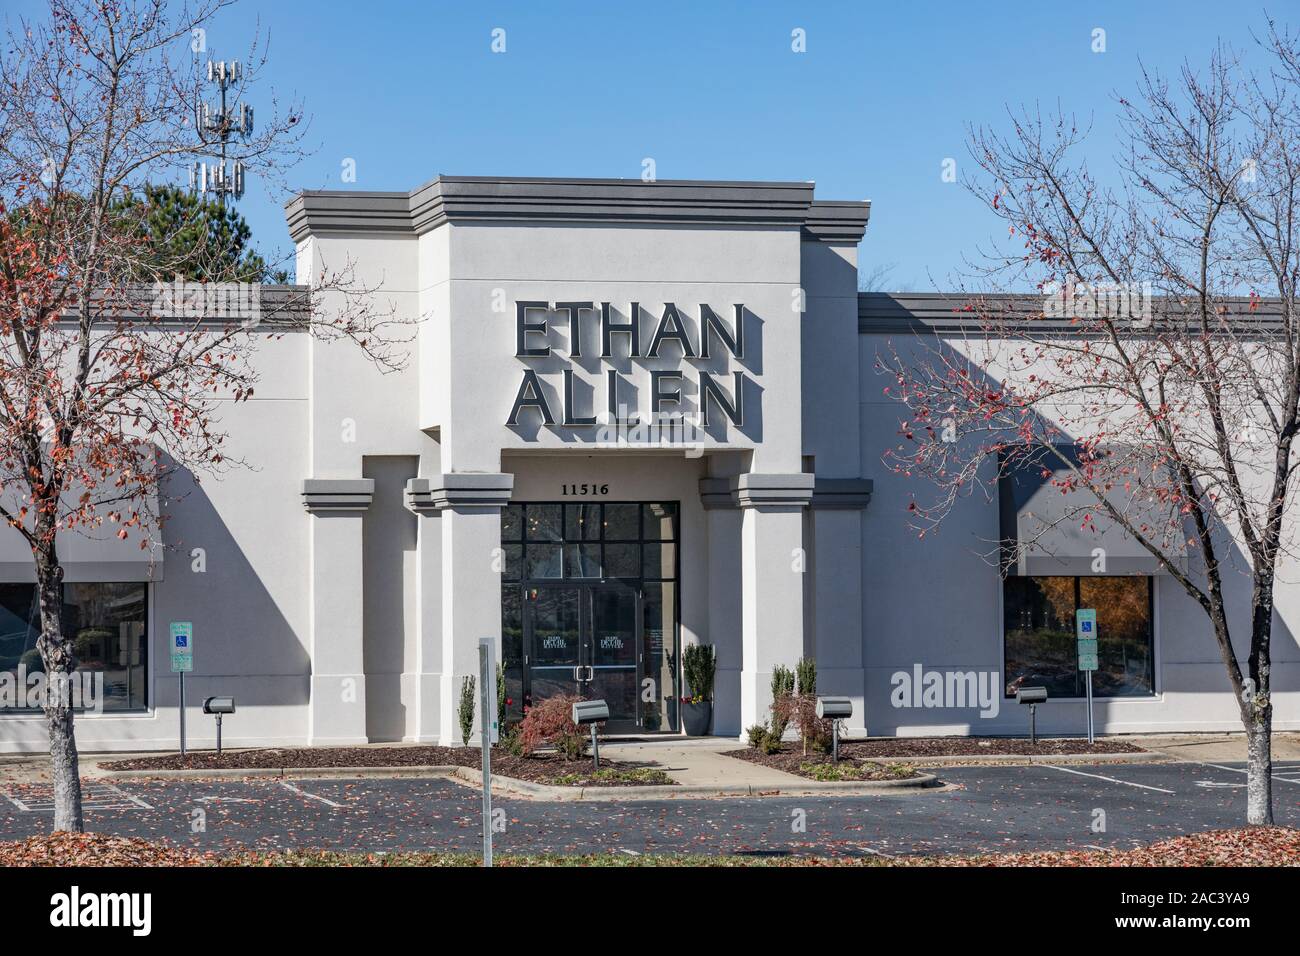 Charlotte, NC, USA-24 nov 2019 : Un Ethan Allen store front, partie d'une chaîne de magasins de meubles américain avec plus de 300 magasins. Banque D'Images